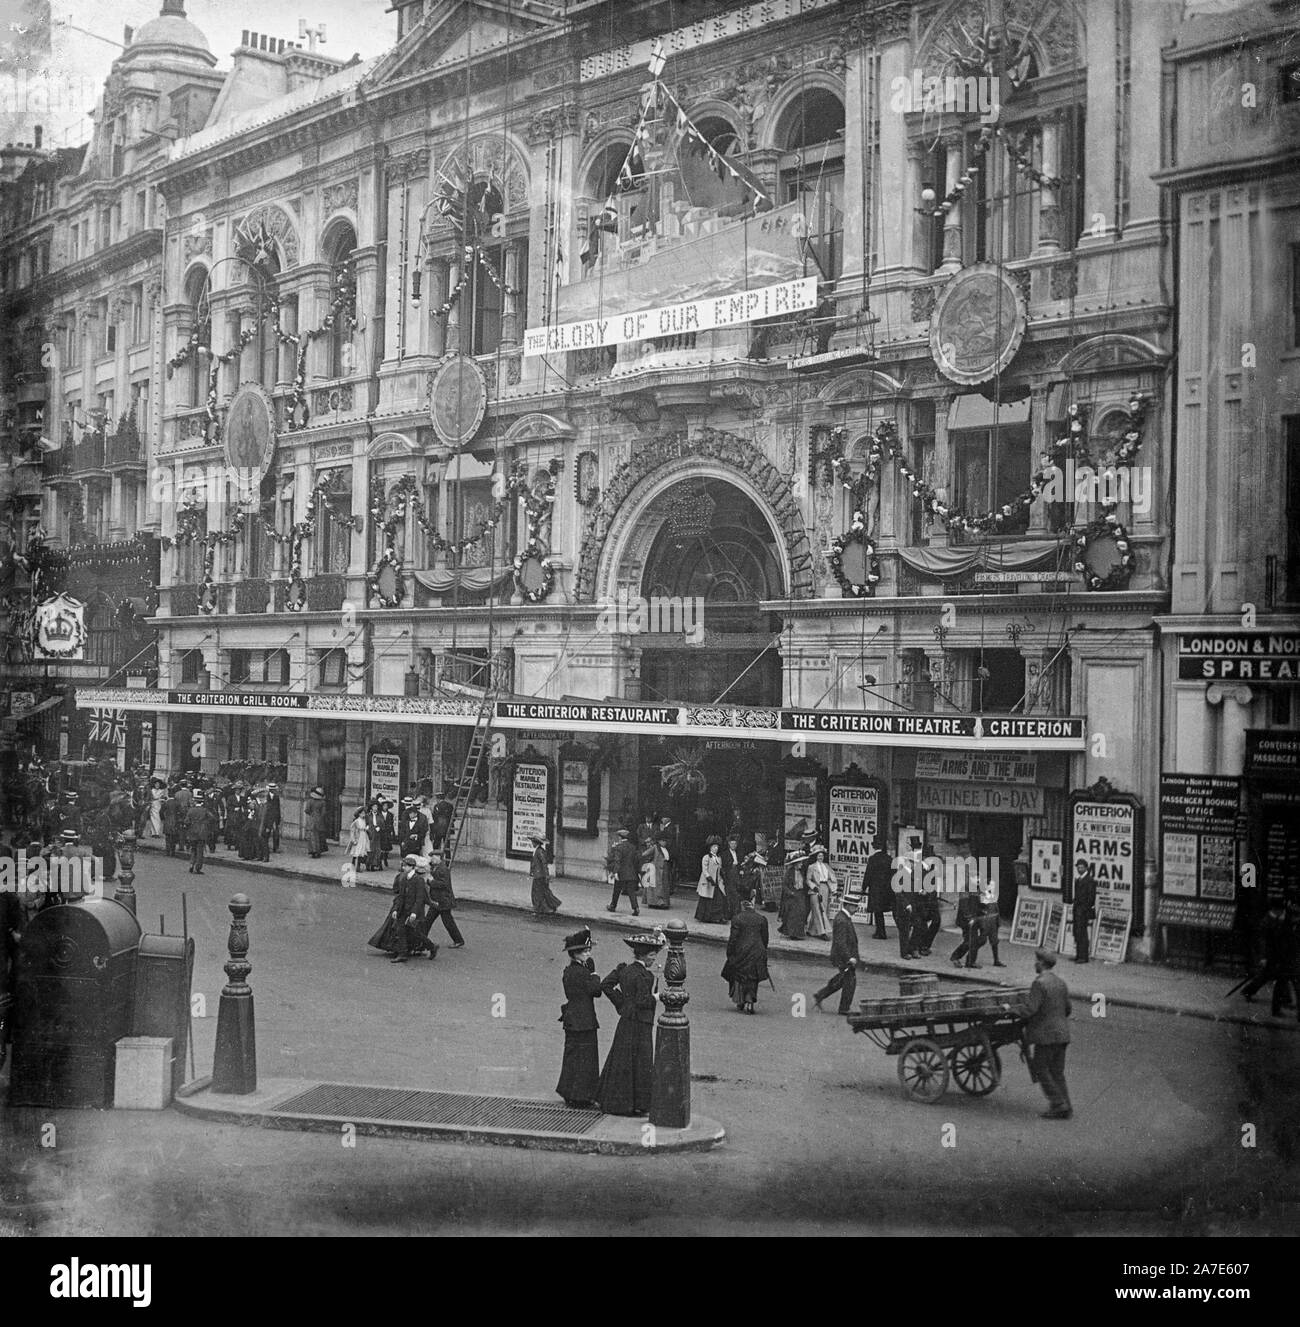 A la fin de l'époque victorienne vintage photographie noir et blanc montrant le Criterion Theatre dans Jermyn Street, Londres, Angleterre. Le théâtre est montrant la production d 'armes et l'homme' de Bernard Shaw. Beaucoup de gens sont dans la rue, montrant la mode typique de l'époque. Banque D'Images